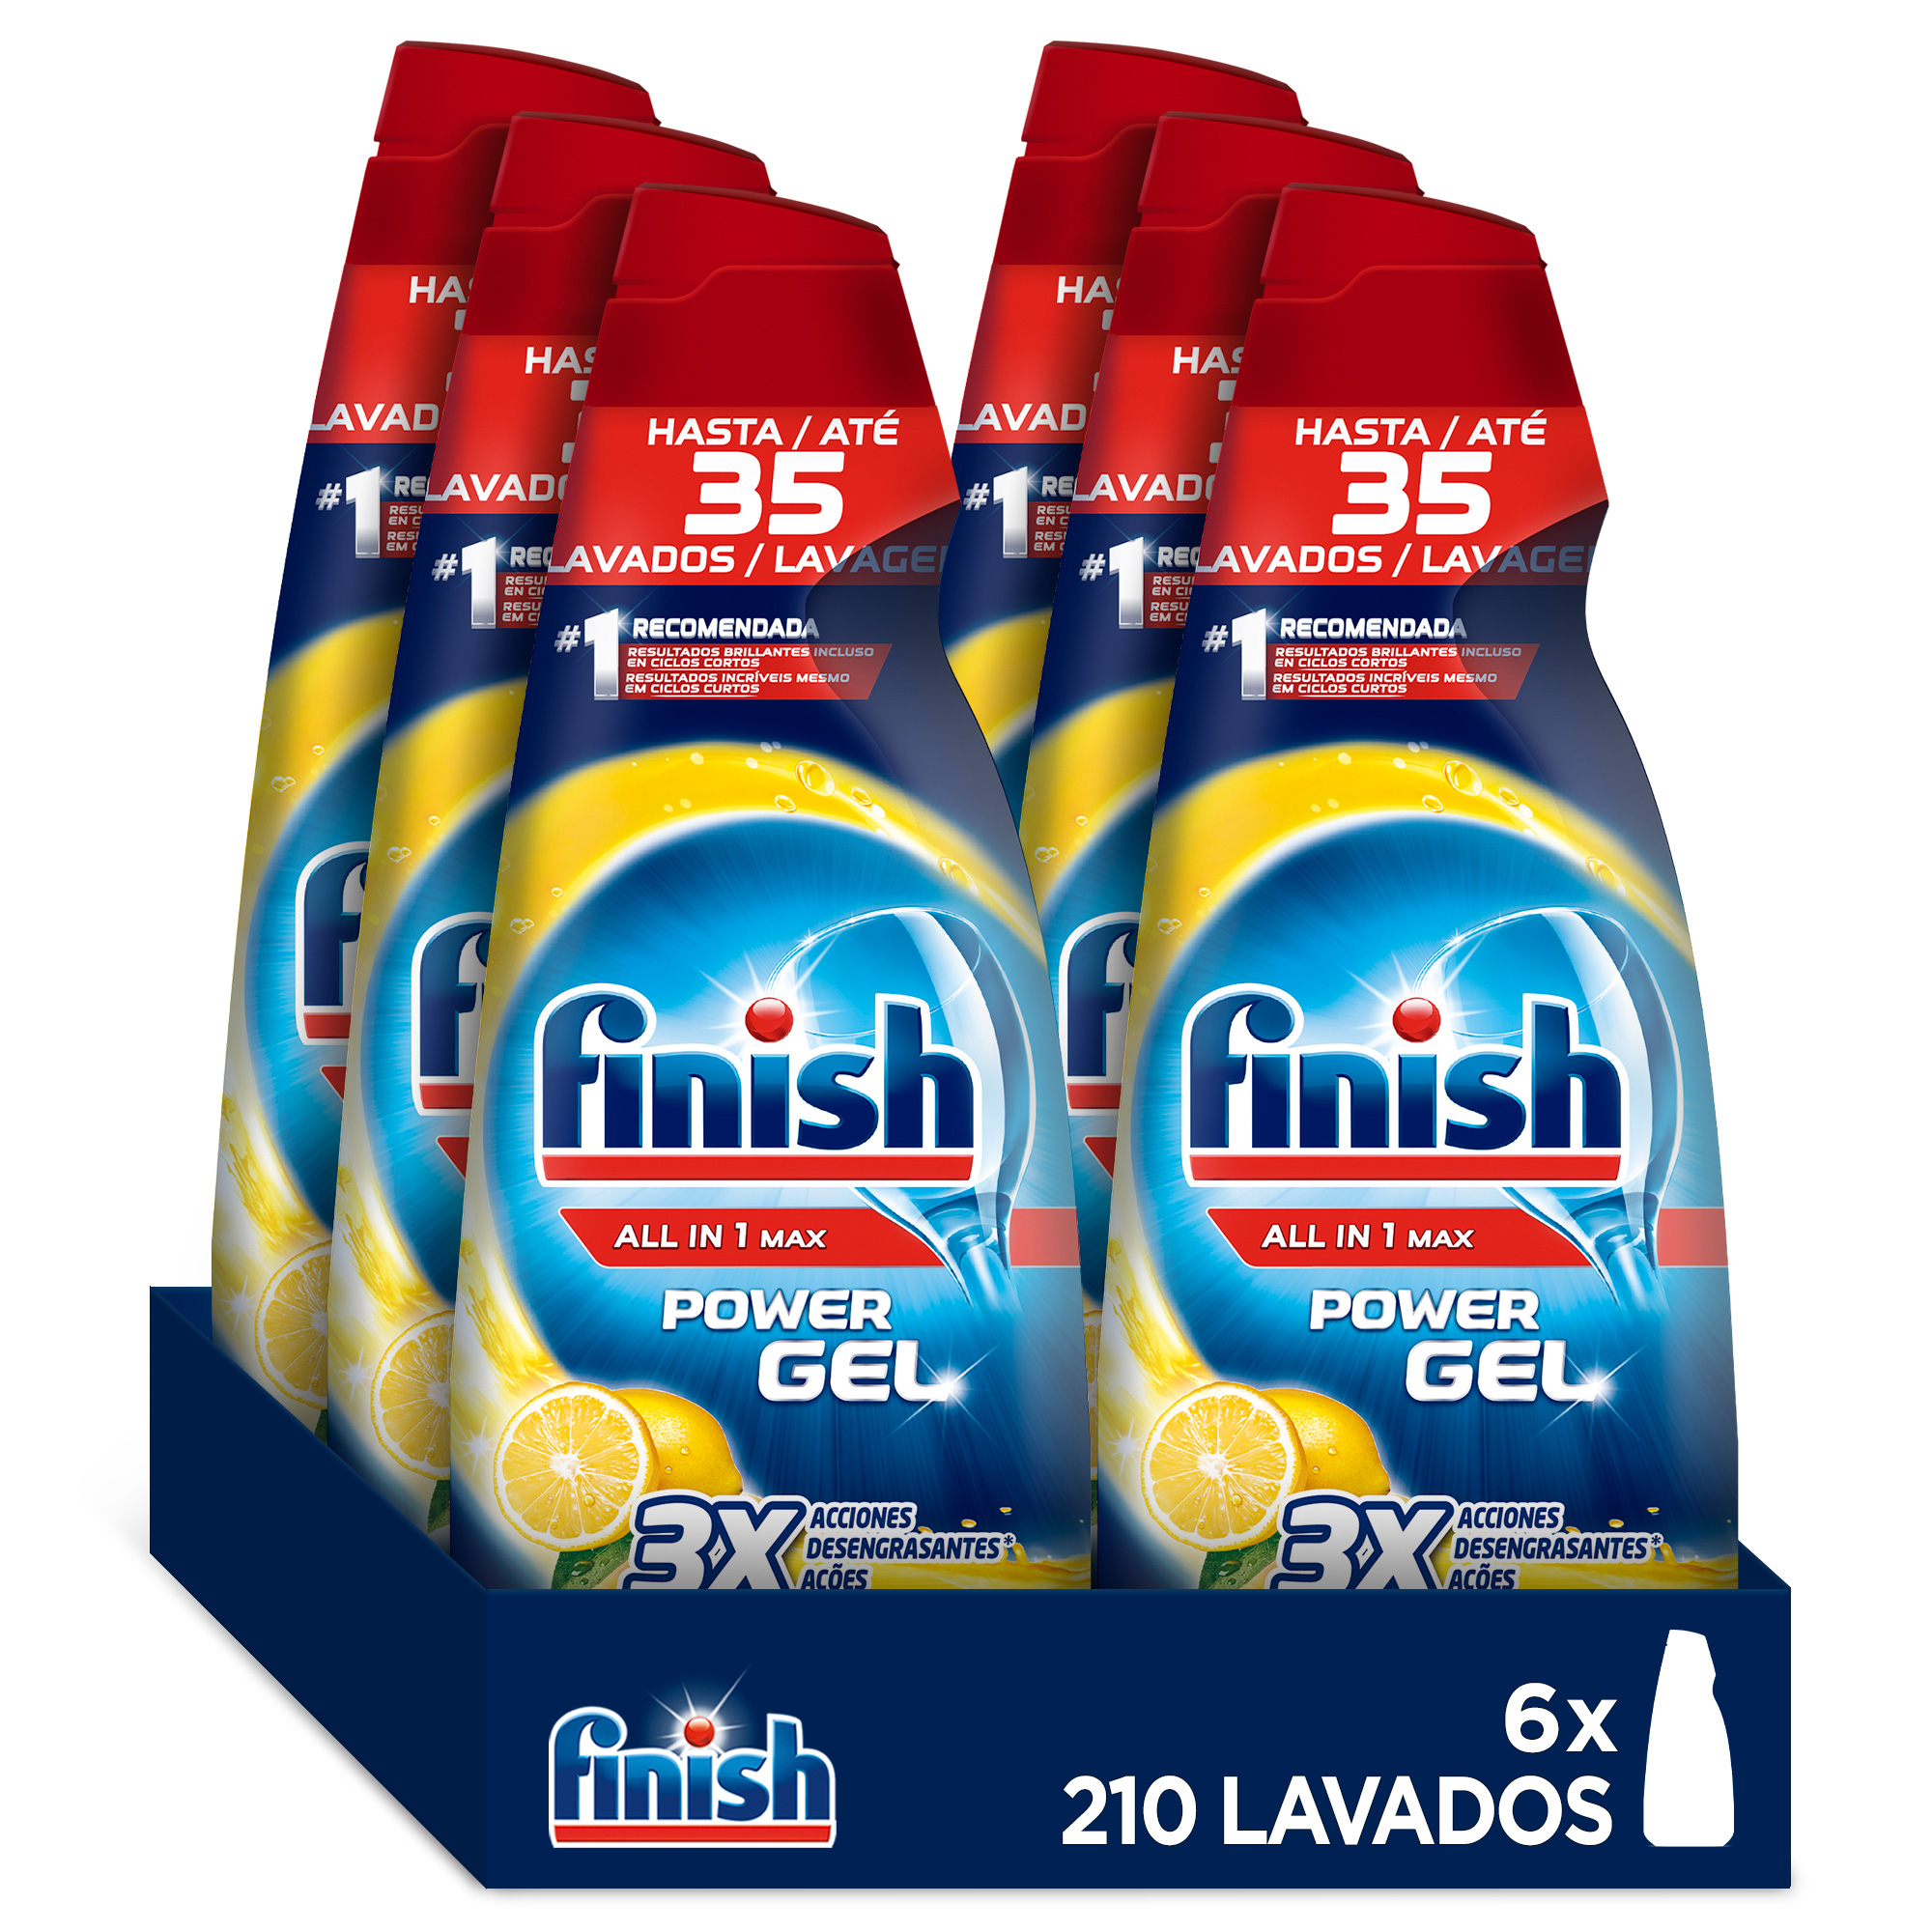 Finish Limpiamáquinas - Limpia lavavajillas contra el mal olor, la